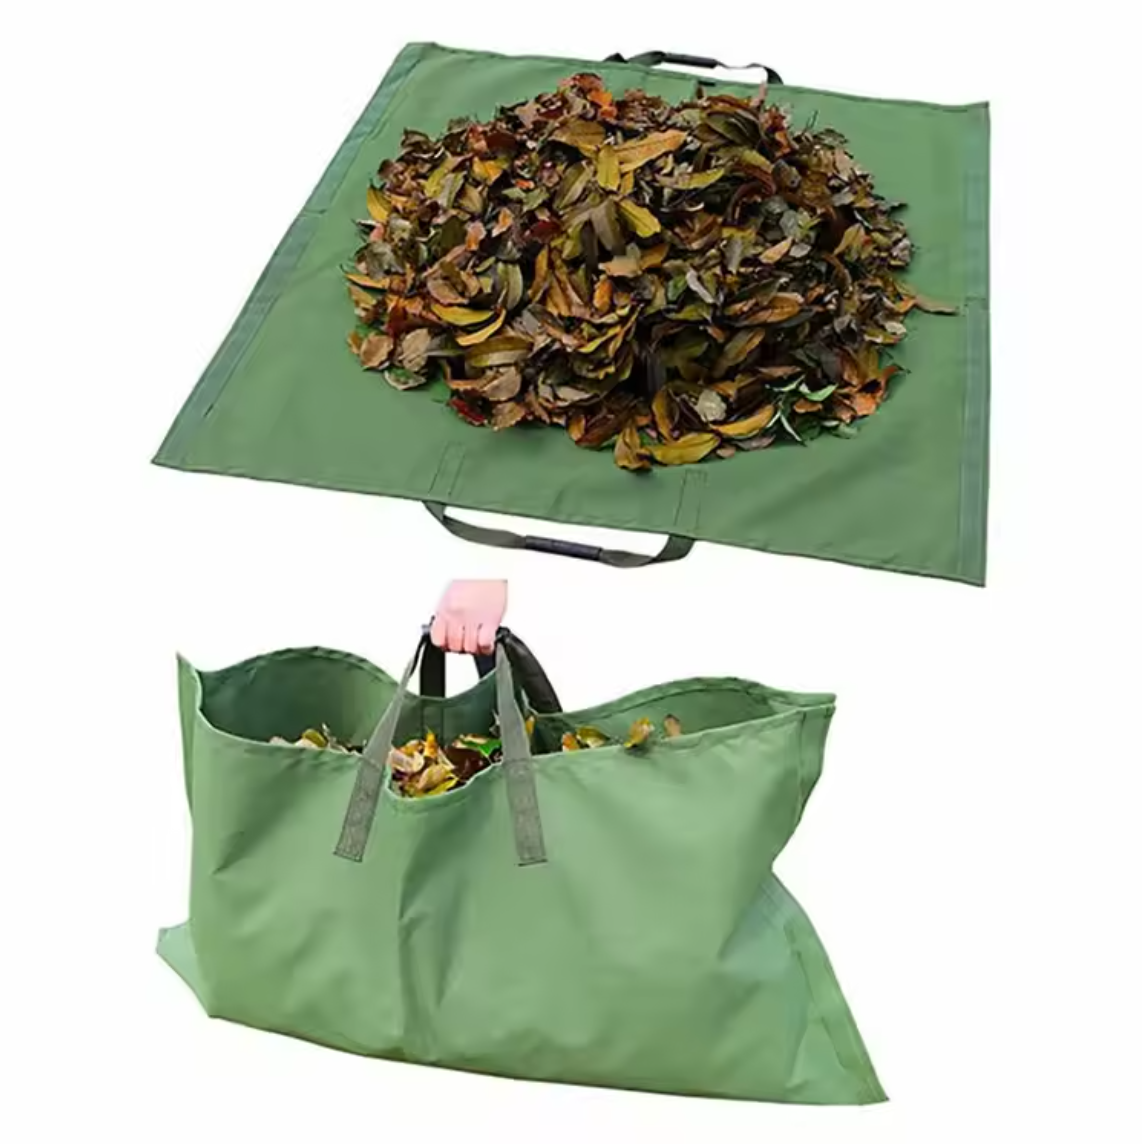 Reusable 600D Oxford Canvas Garden Leaf Tarp Bag